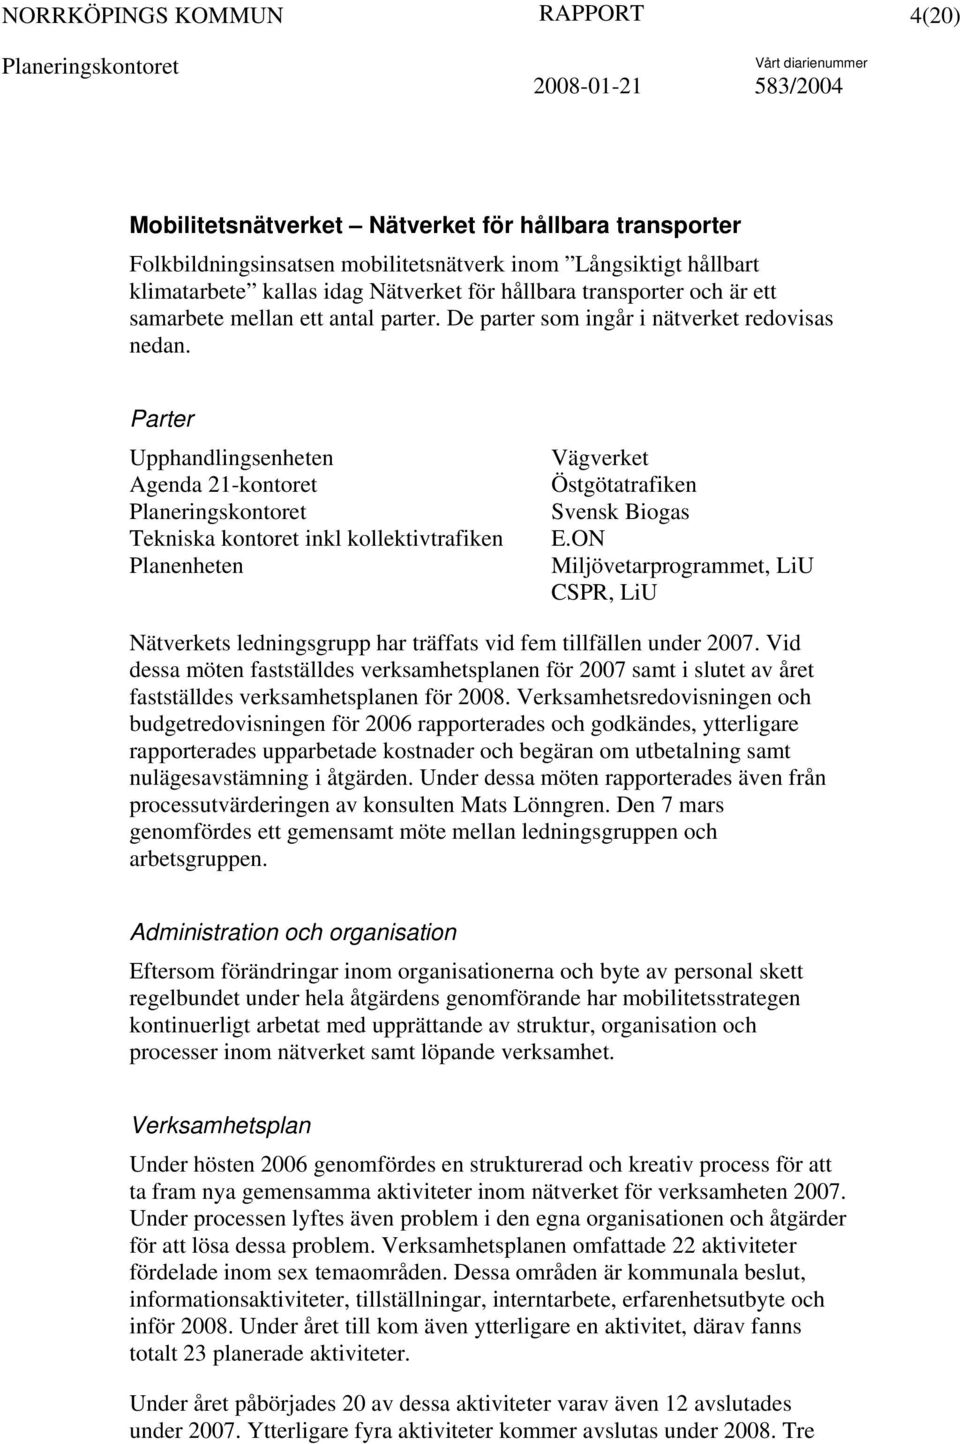 Parter Upphandlingsenheten Agenda 21-kontoret Tekniska kontoret inkl kollektivtrafiken Planenheten Vägverket Östgötatrafiken Svensk Biogas E.